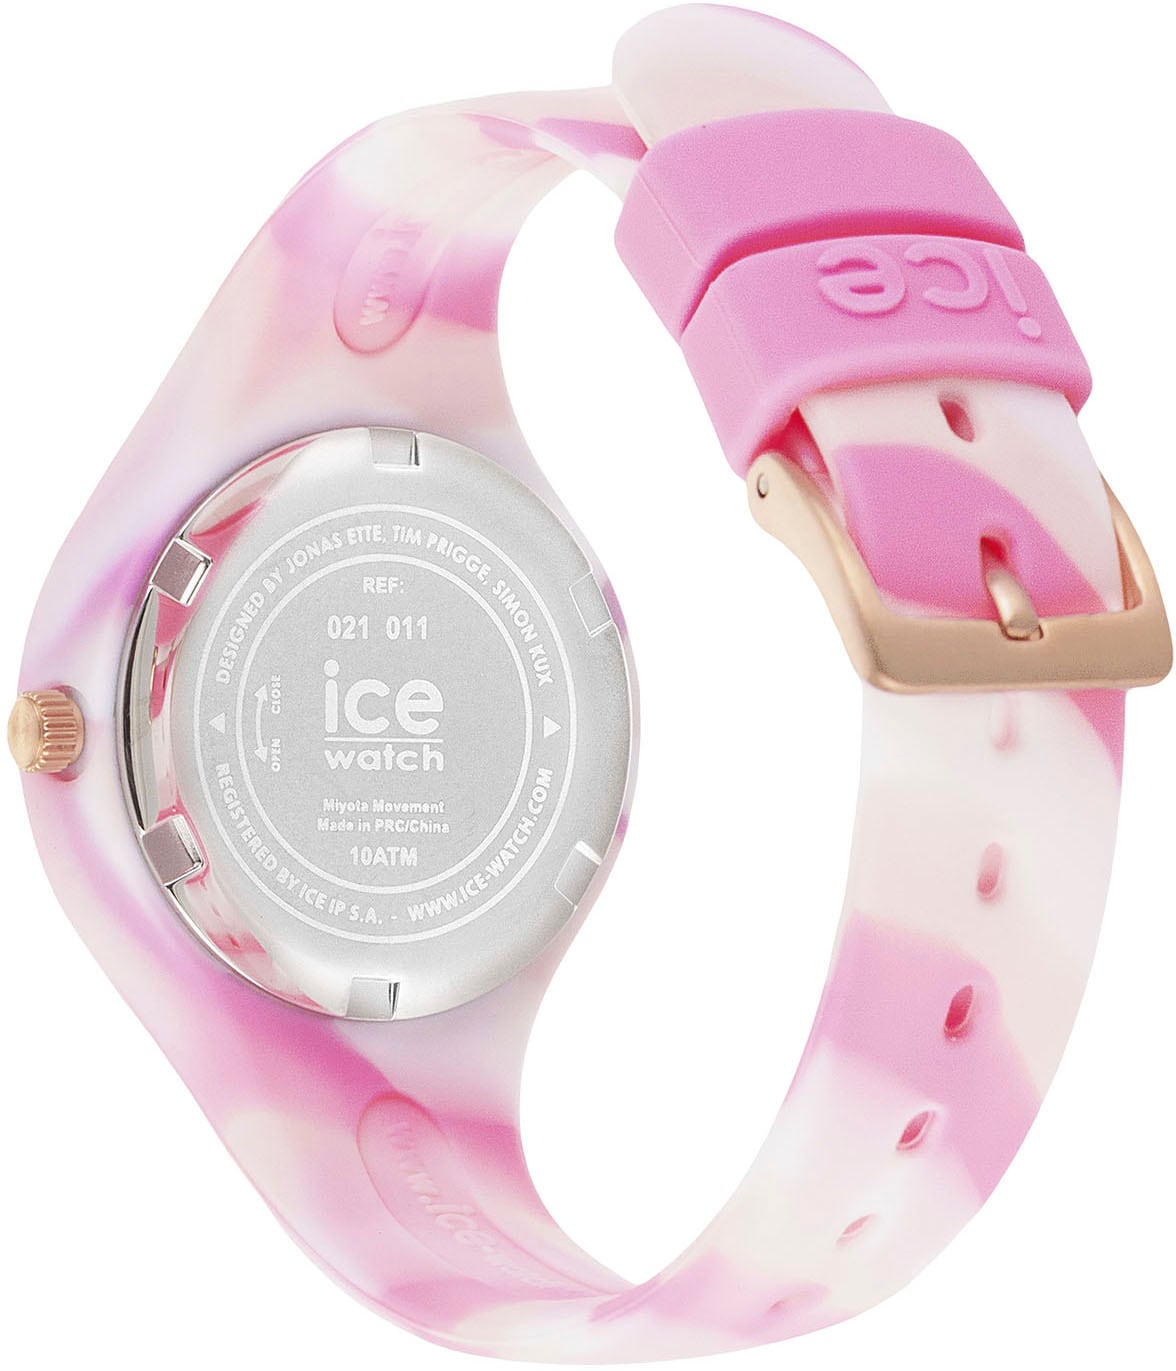 ice-watch Quarzuhr »ICE walking Geschenk als auch Extra-Small - tie ideal - shades dye im I\'m | and Pink Onlineshop 3H, 021011«, 